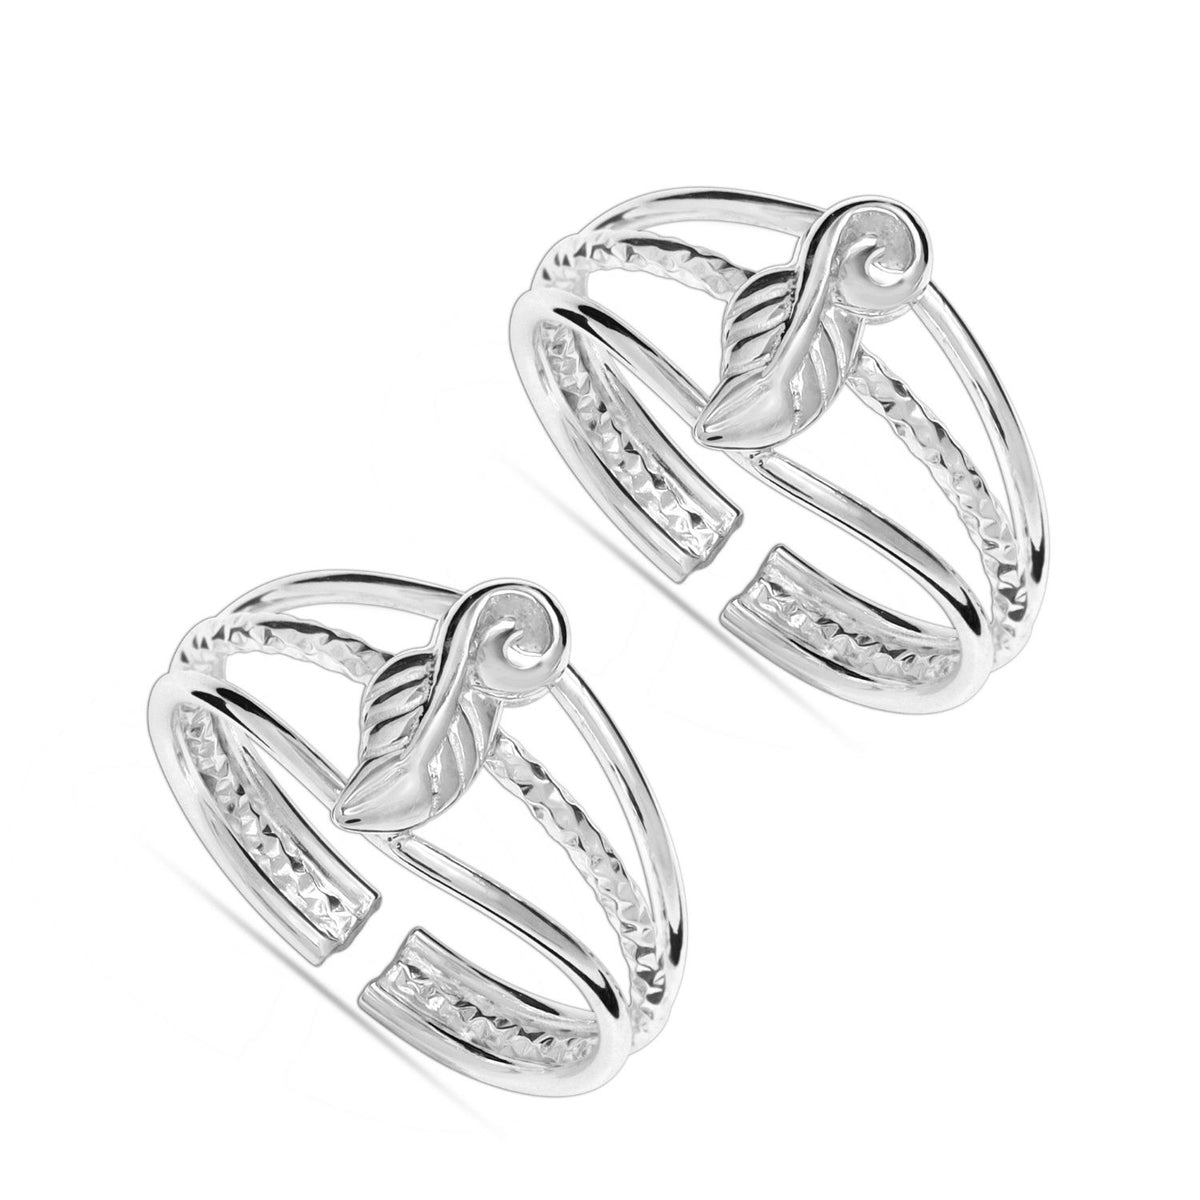 Buy Sterling Silver Rings for Women Online - Truesilver